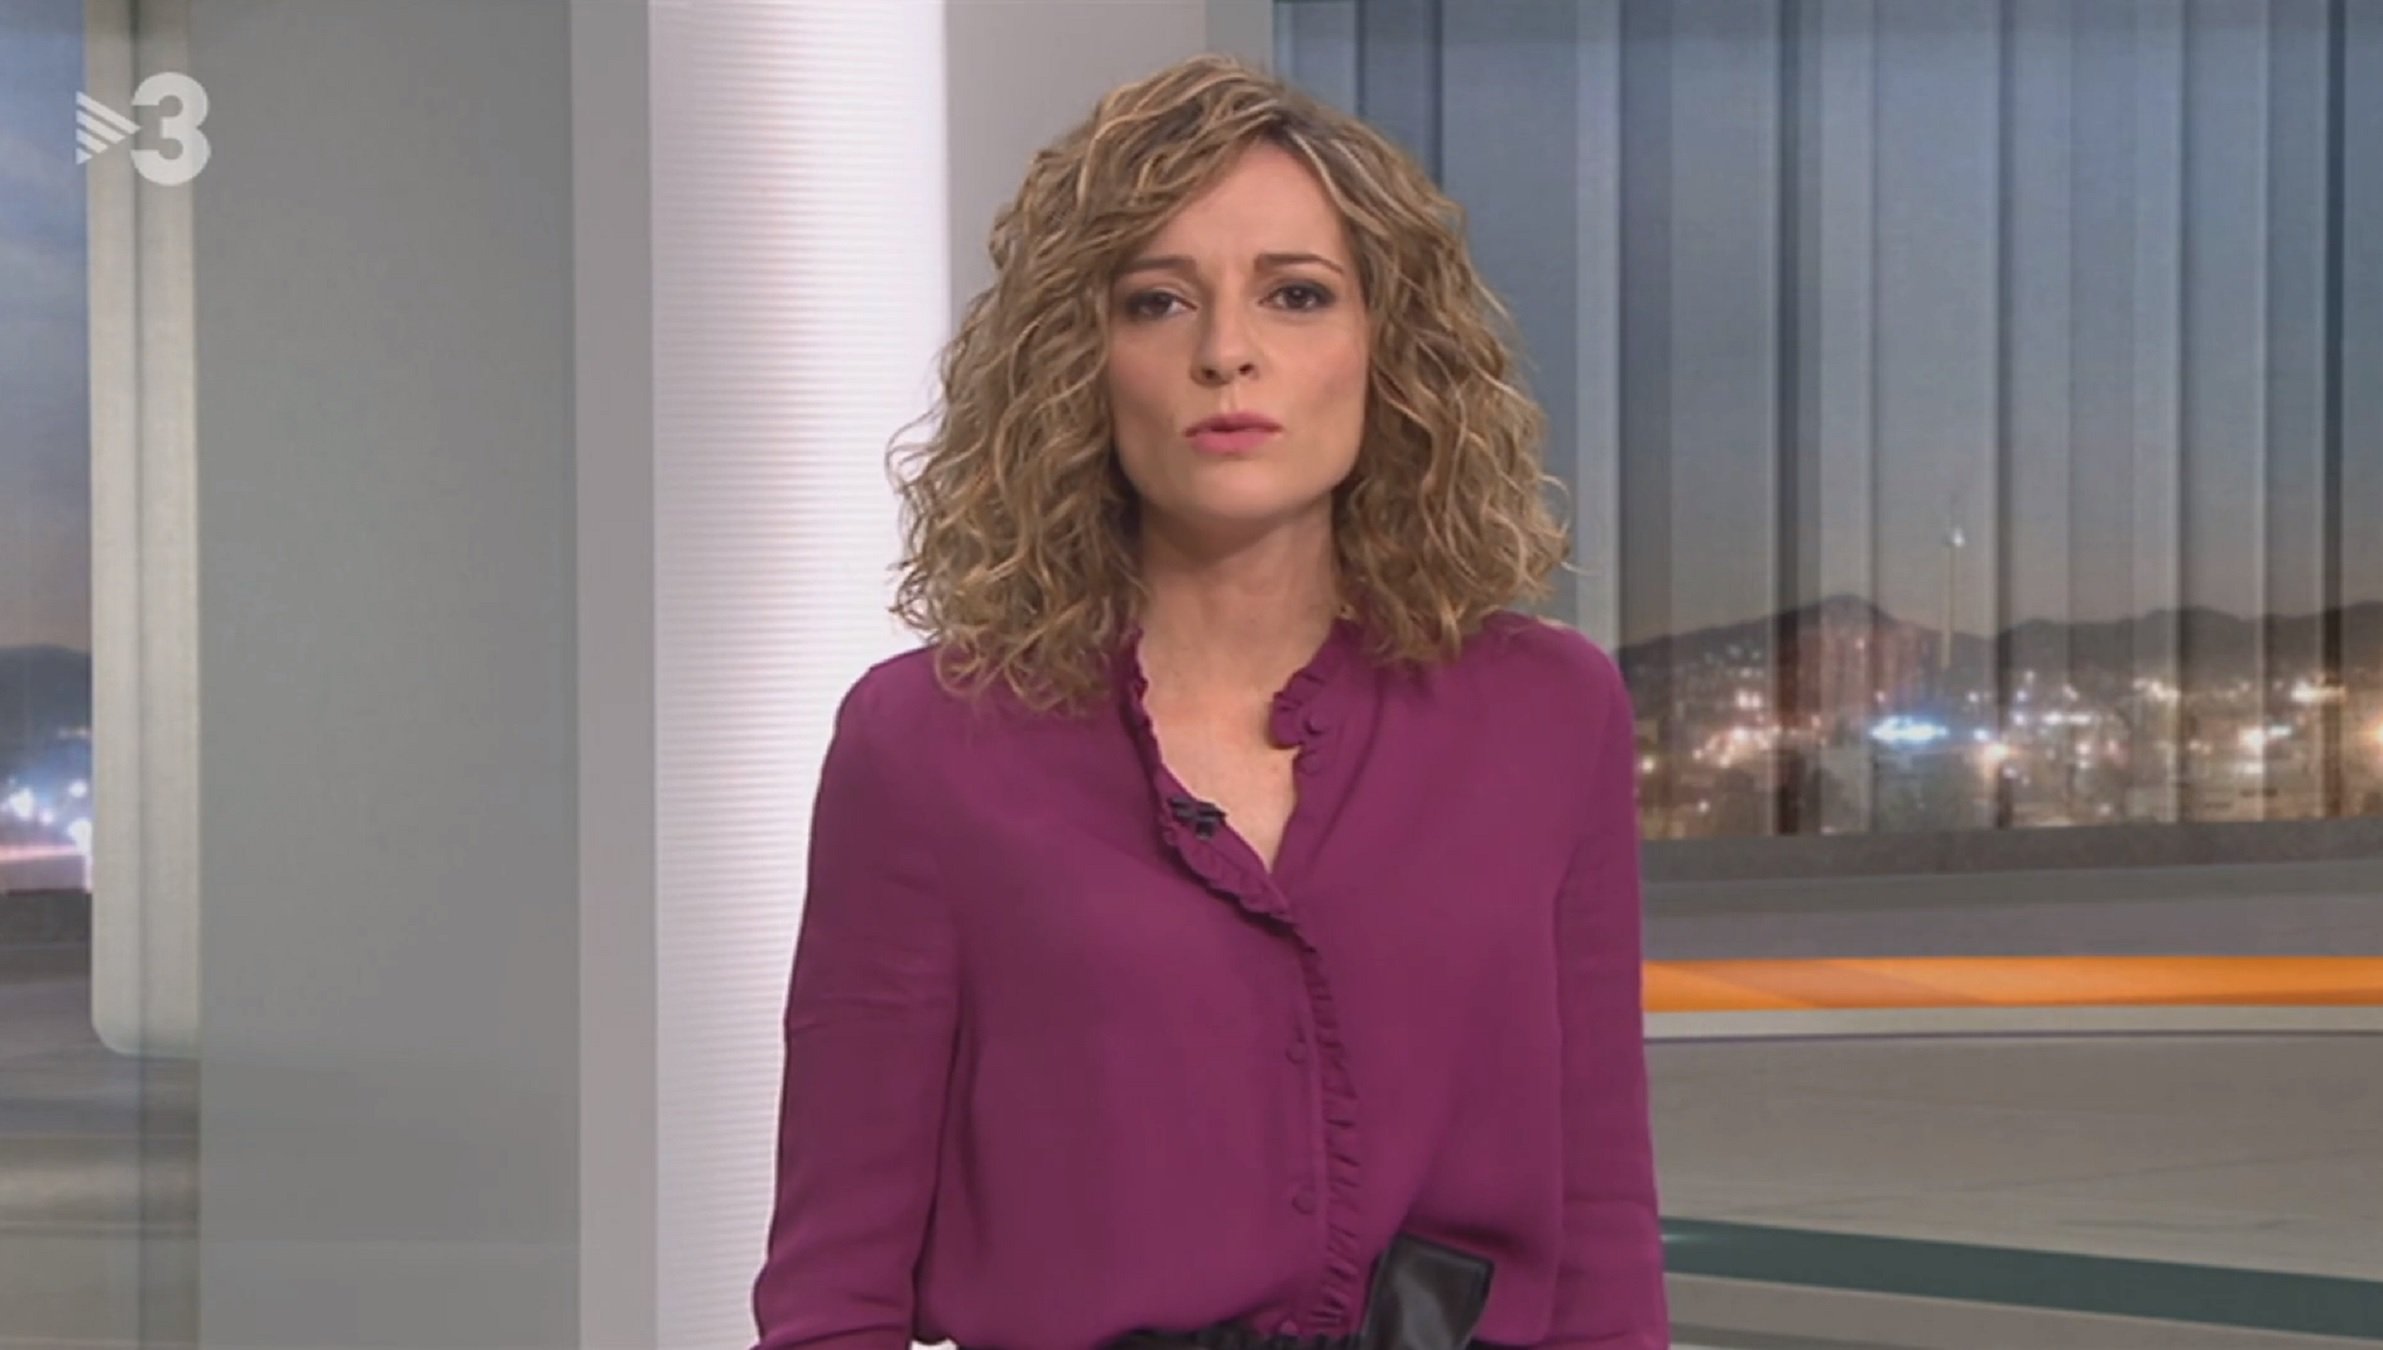 Cristina Riba de TV3, irreconocible de joven cuando era presentadora en La Sexta